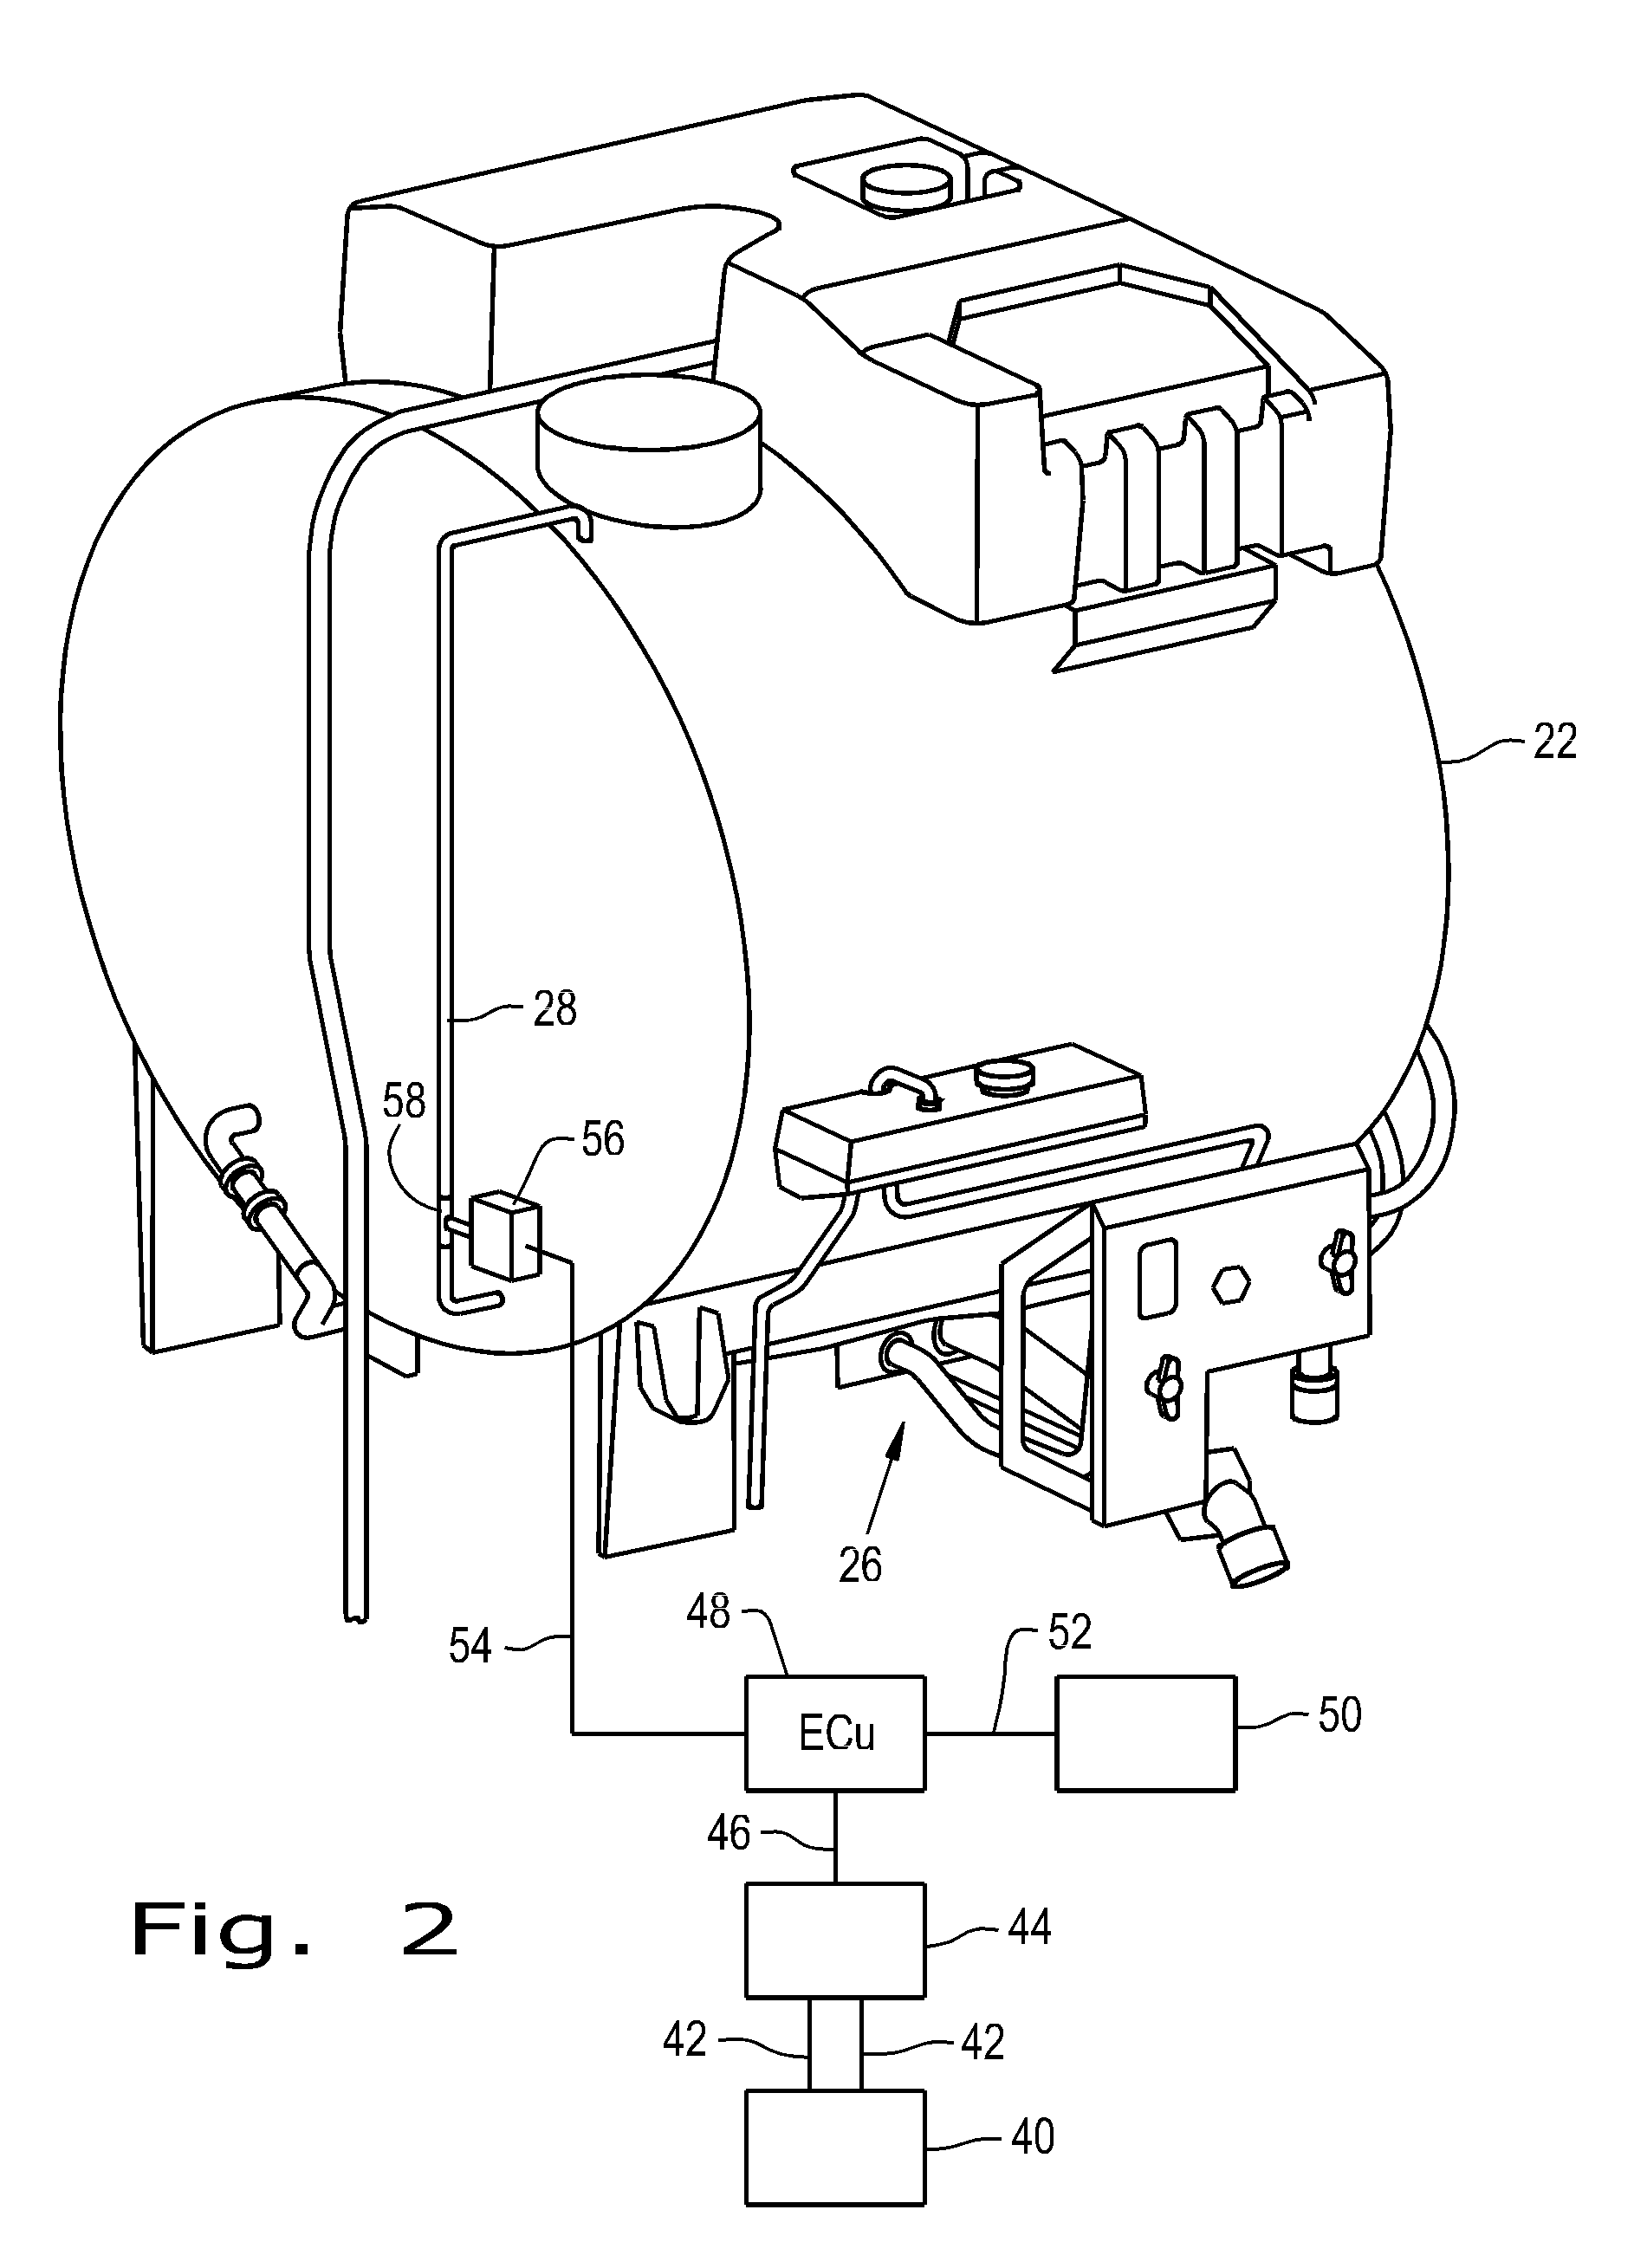 Liquid dispensing equipment with active suspension system